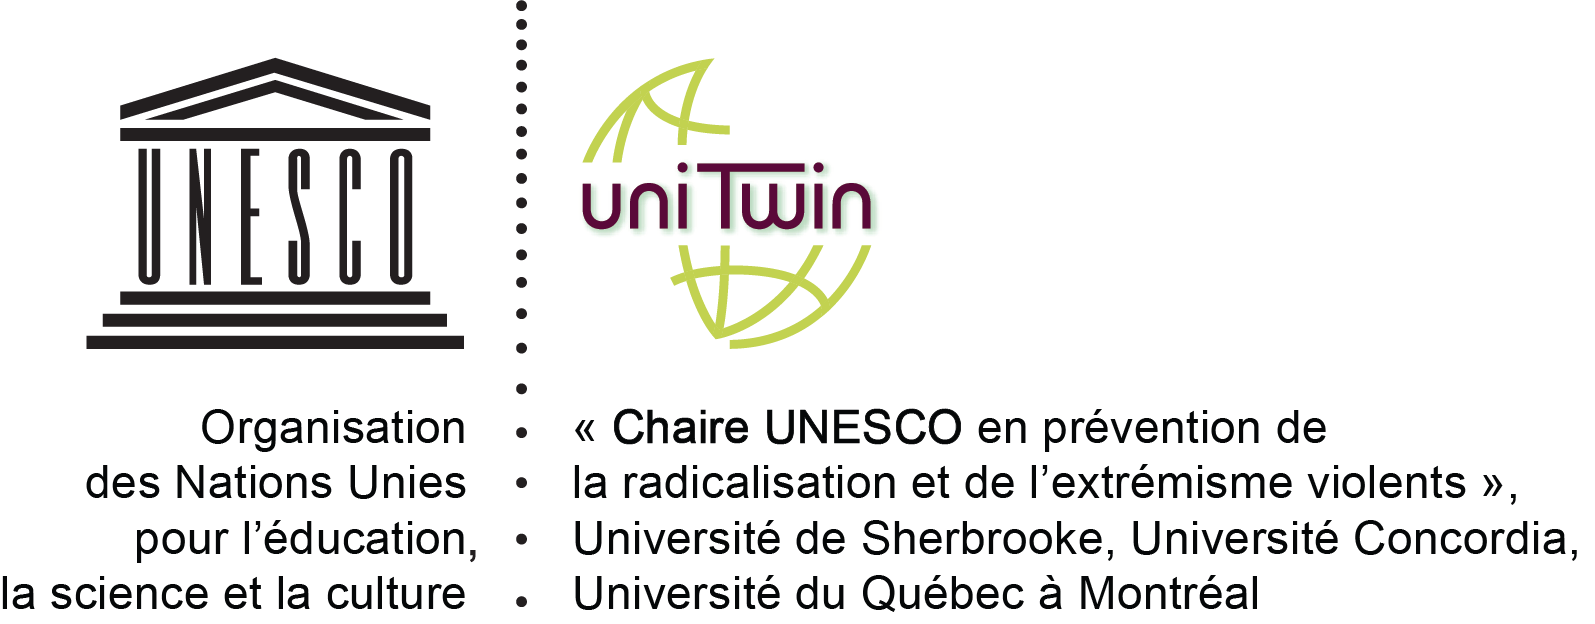 Chaire UNESCO en prévention de la radicalisation et de l’extrémisme violents